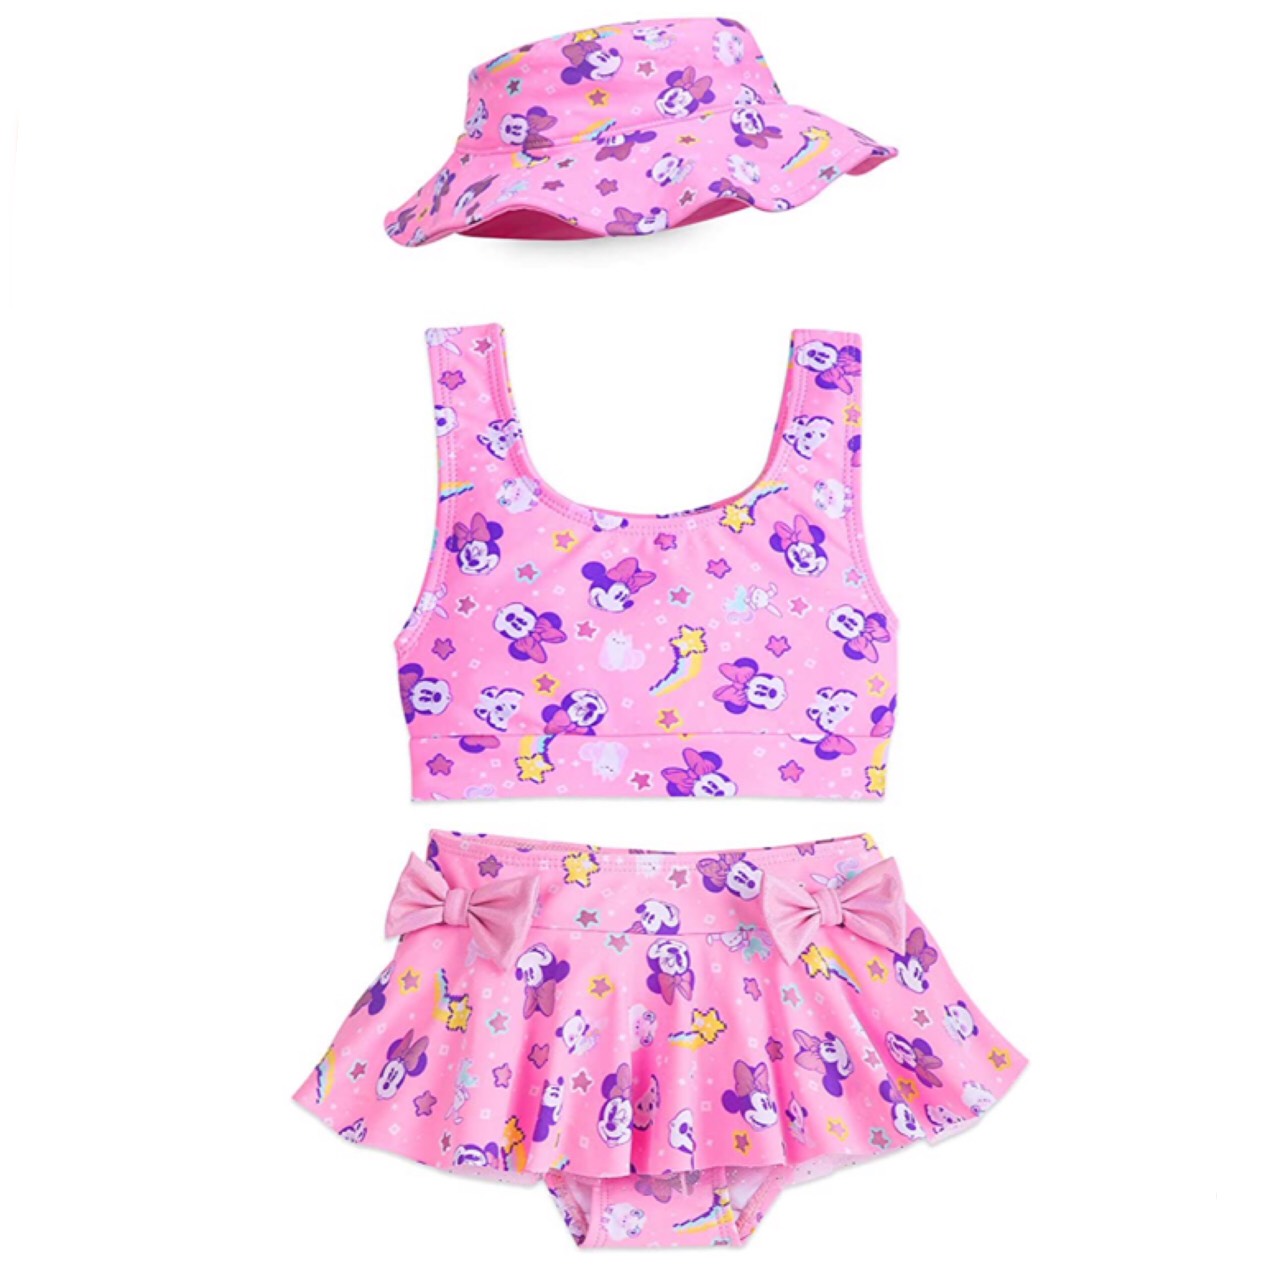 ชุดว่ายน้ำ มินนี่เมาส์ Disney Minnie Mouse Pink Deluxe Swimsuit Set for Girls